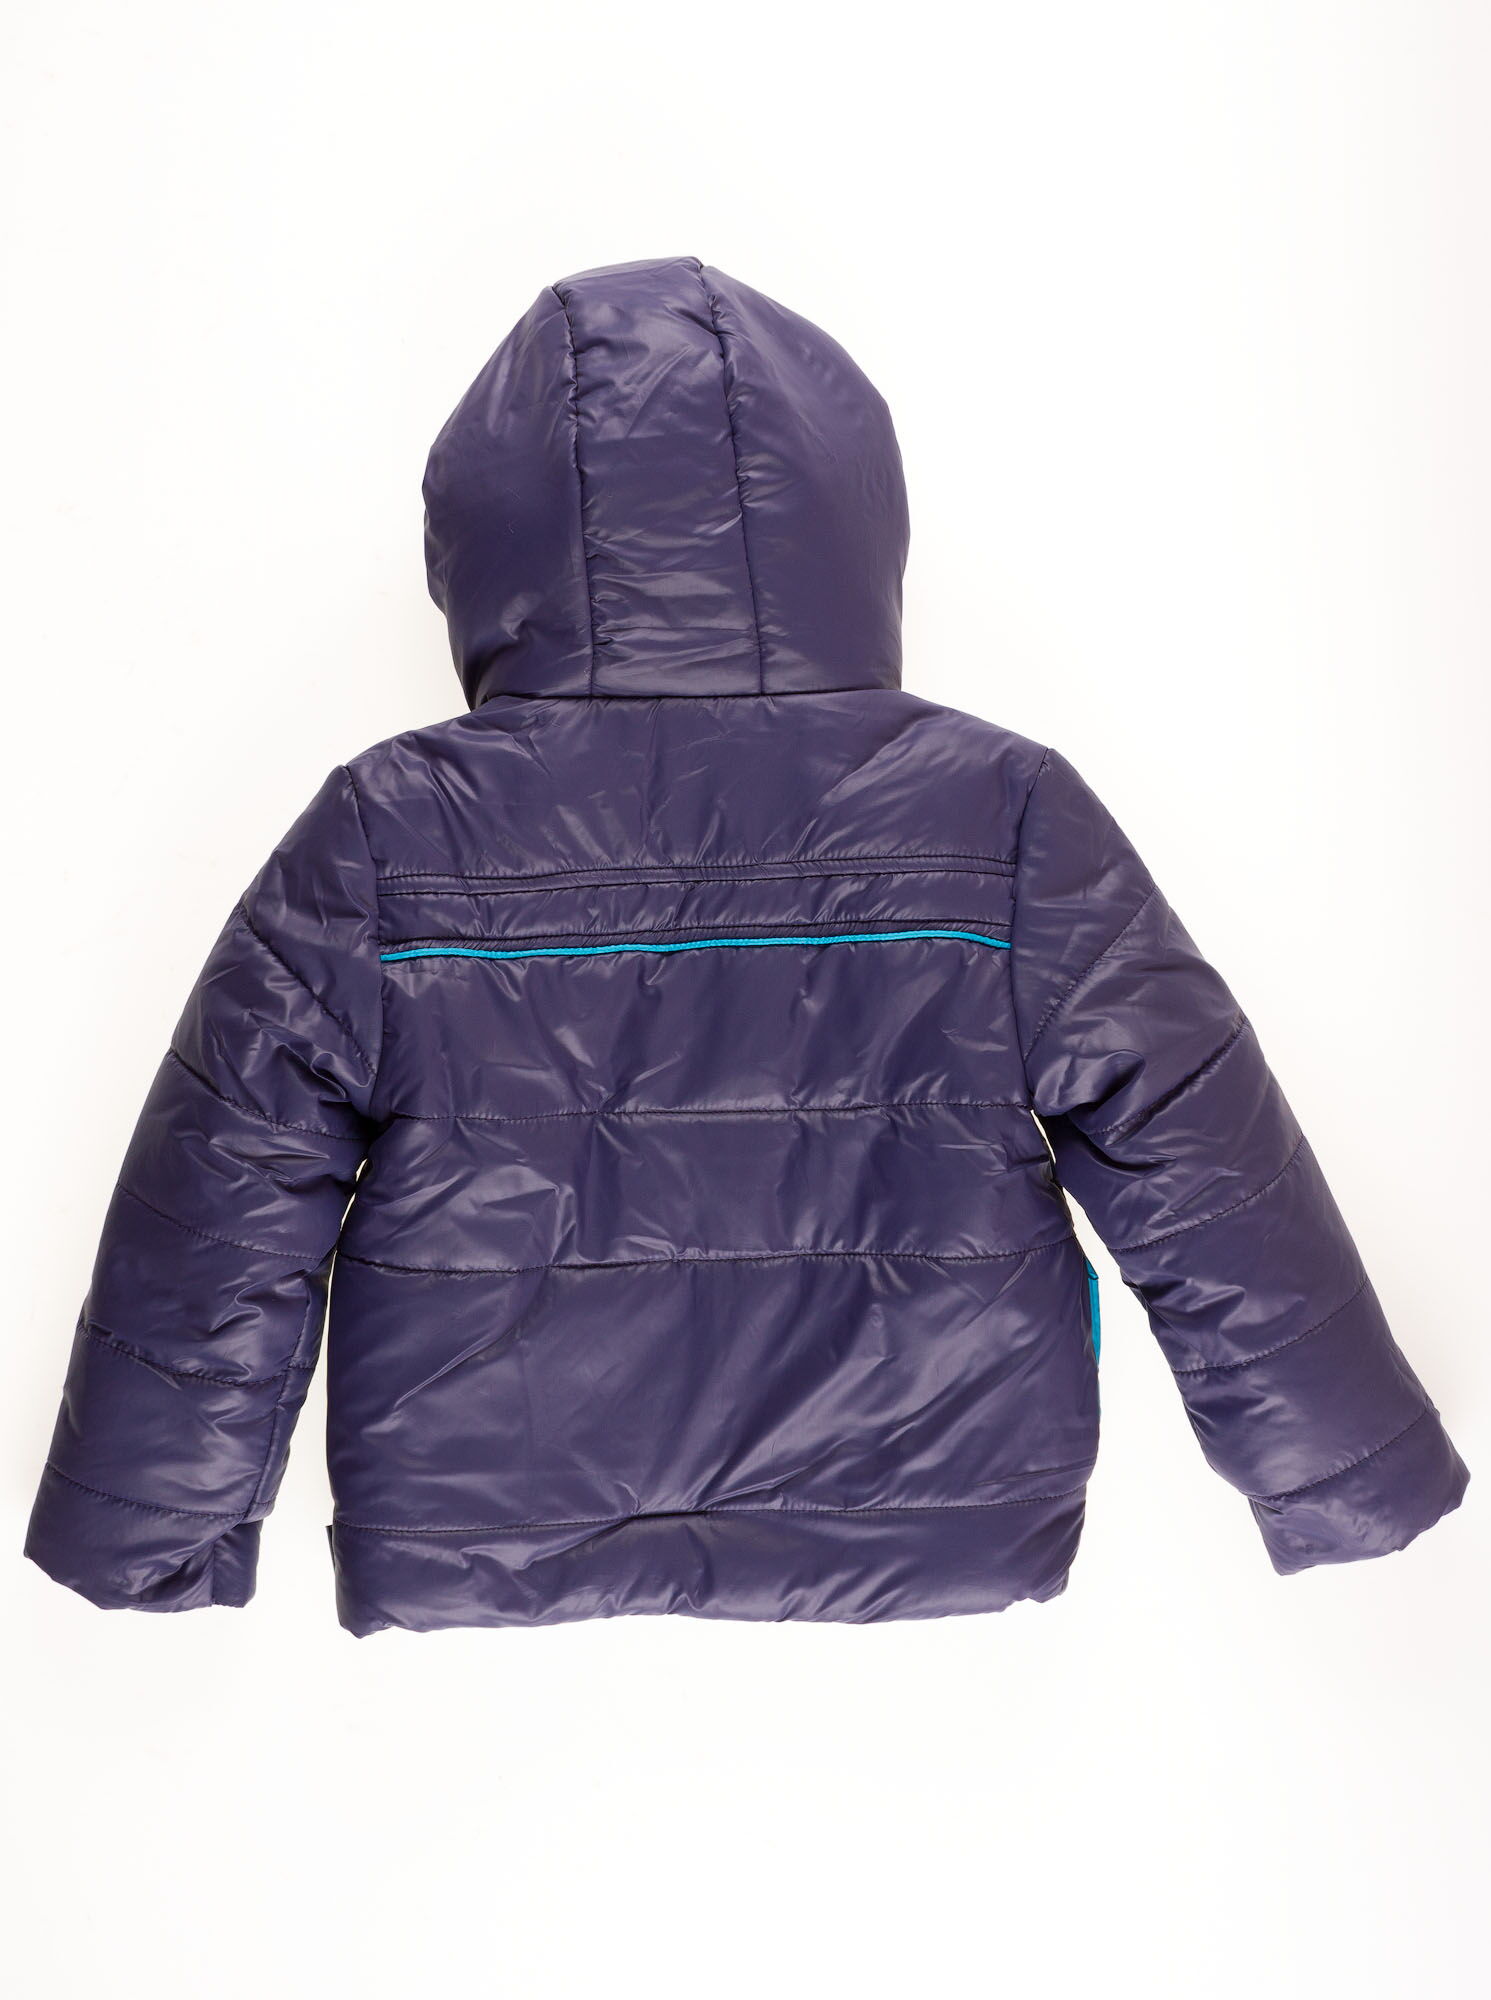 Куртка зимняя для мальчика Одягайко фиолетовая 2748 - размеры